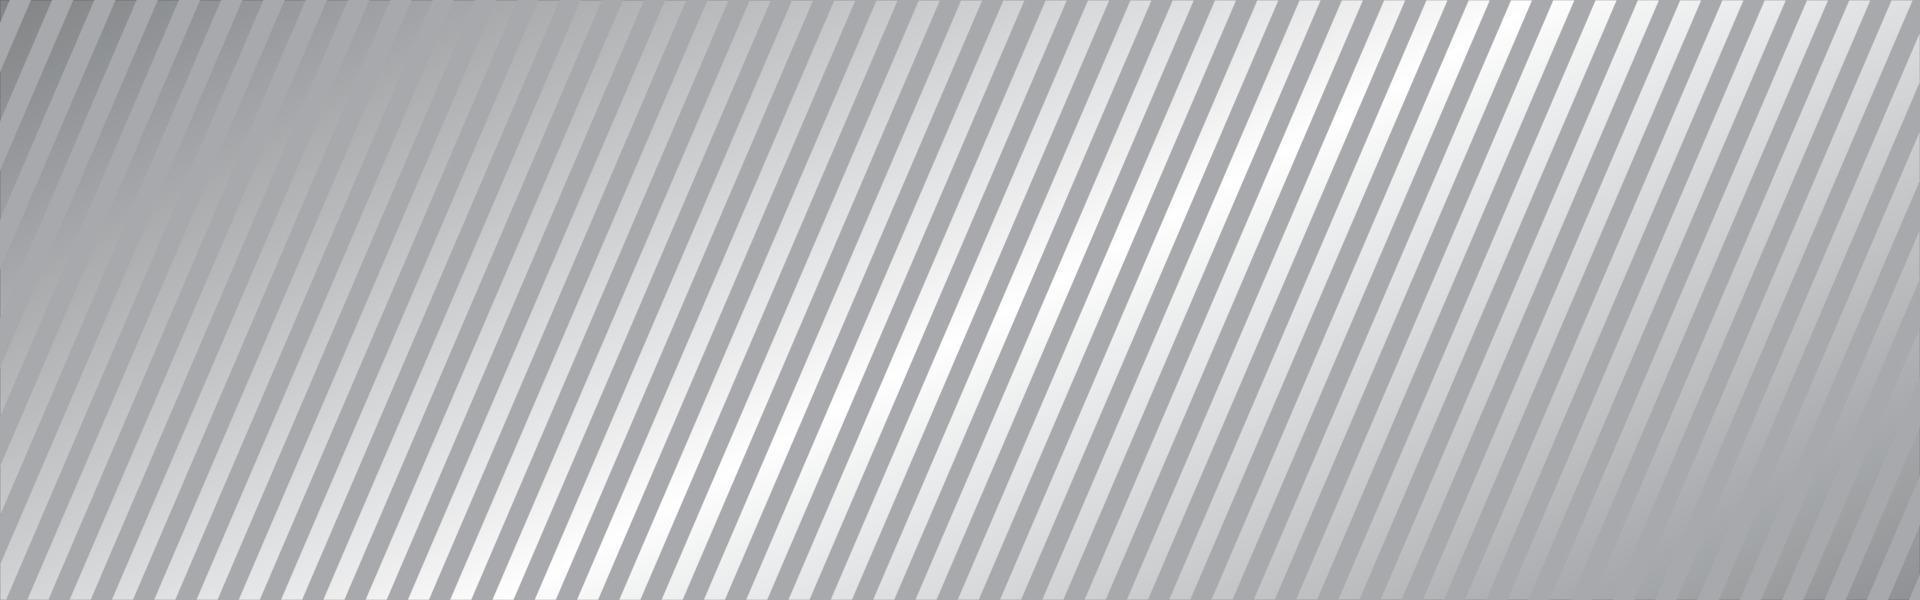 diagonale lijn lange achtergrond. witte streep textuur. grijs recht ontwerpelement. abstracte neutrale banner. stof materiaal decoratie. dynamisch lijnenconcept. omslagsjabloon. vector illustratie